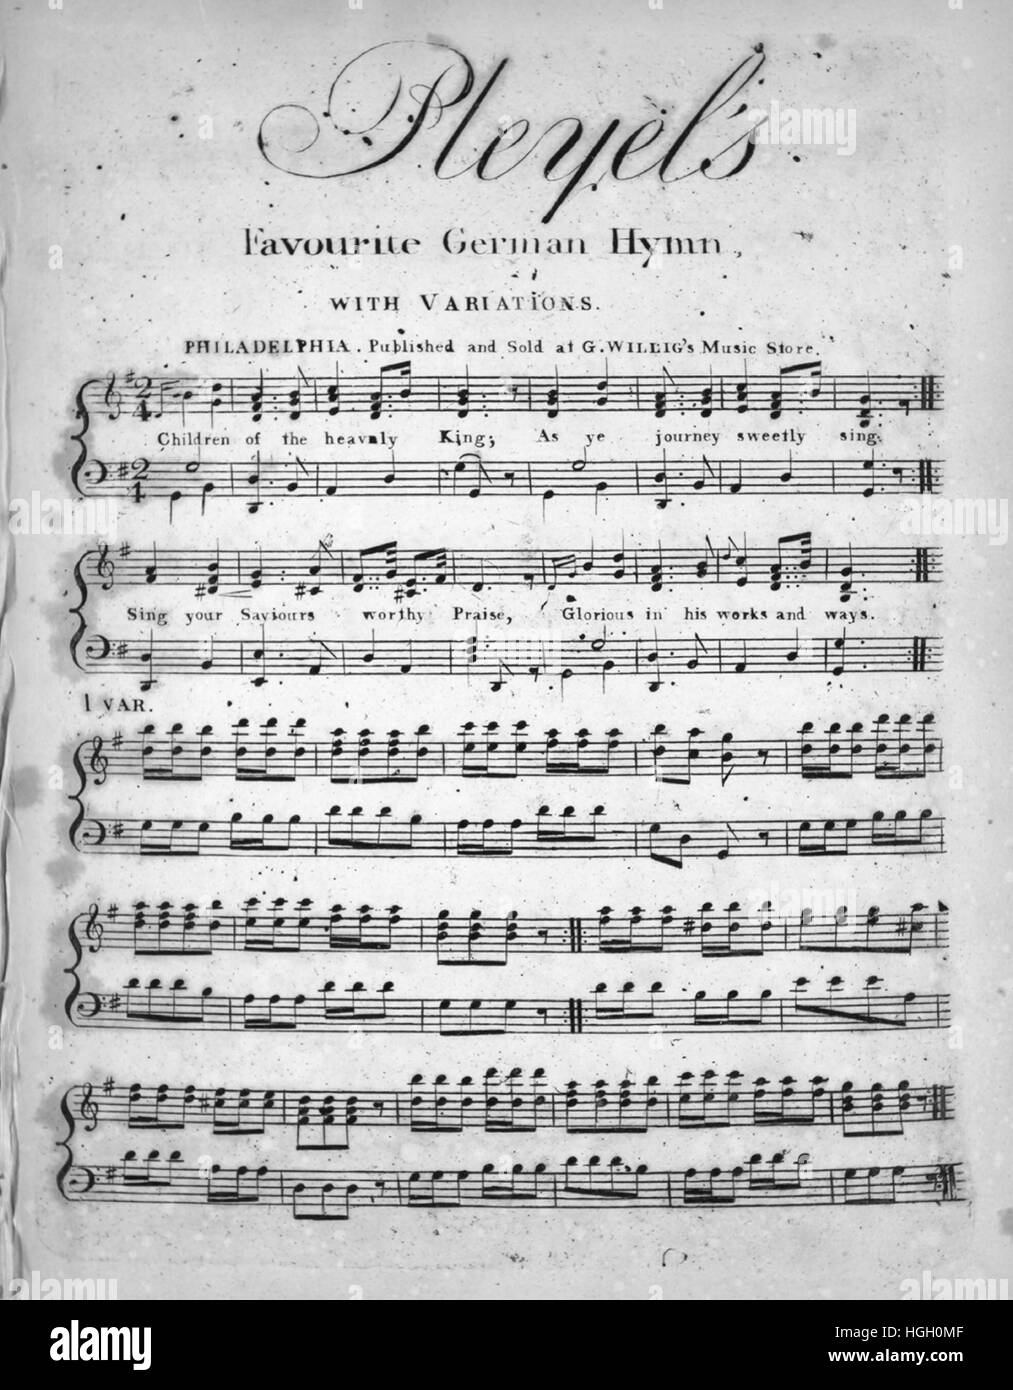 Sheet Music image de couverture de la chanson 'Pleyel's favorite hymne  allemand, avec des variations', avec une œuvre originale lecture notes  '[Pleyel]', United States, 1900. L'éditeur est répertorié comme "G.  Willig's Music